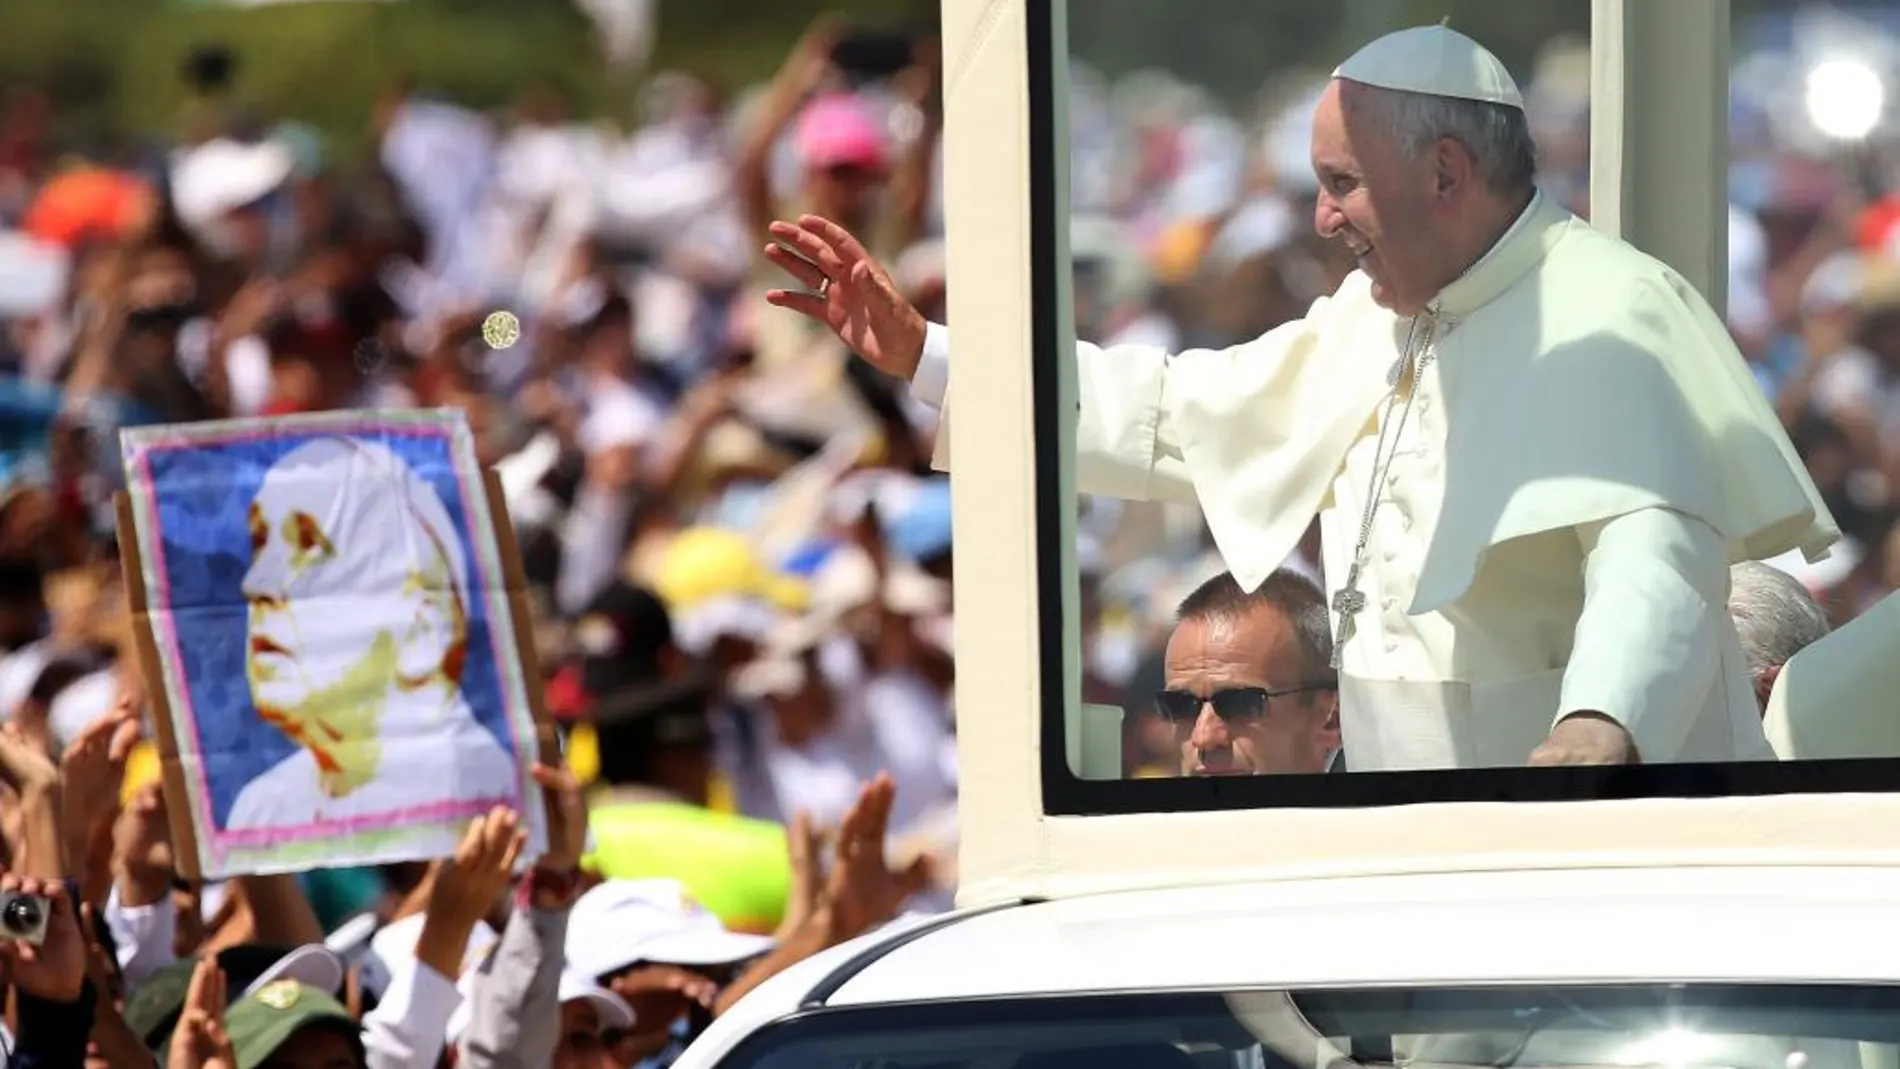 El Papa Francisco saluda a los fieles a su llegada a celebrar la misa en Guayaquil